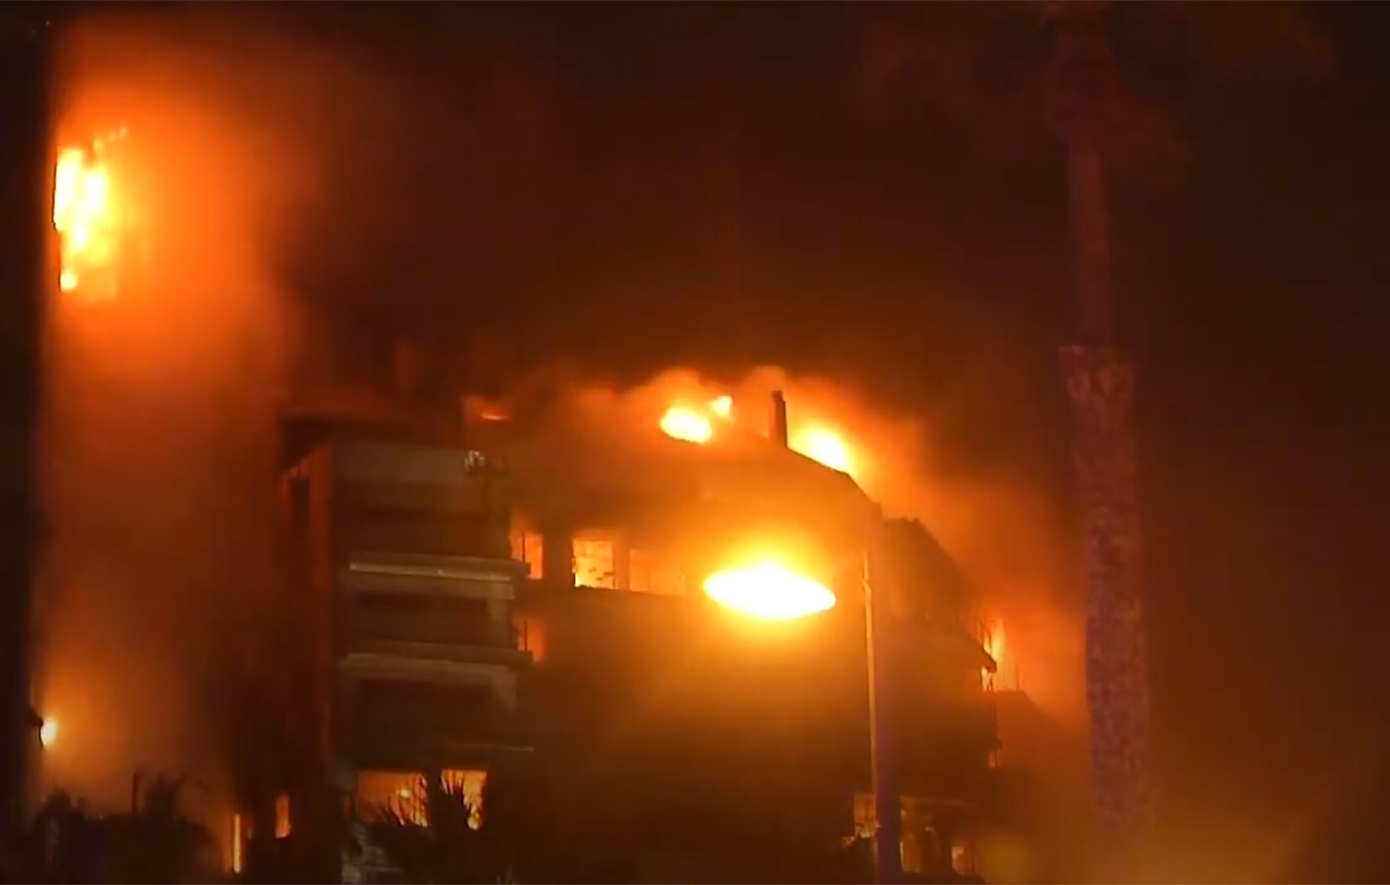 Νέα στοιχεία για την τραγωδία στην Ισπανία: 4 νεκροί και 19 αγνοούμενοι στη φωτιά του κτιρίου που κάηκε «σαν να ήταν από άχυρο»